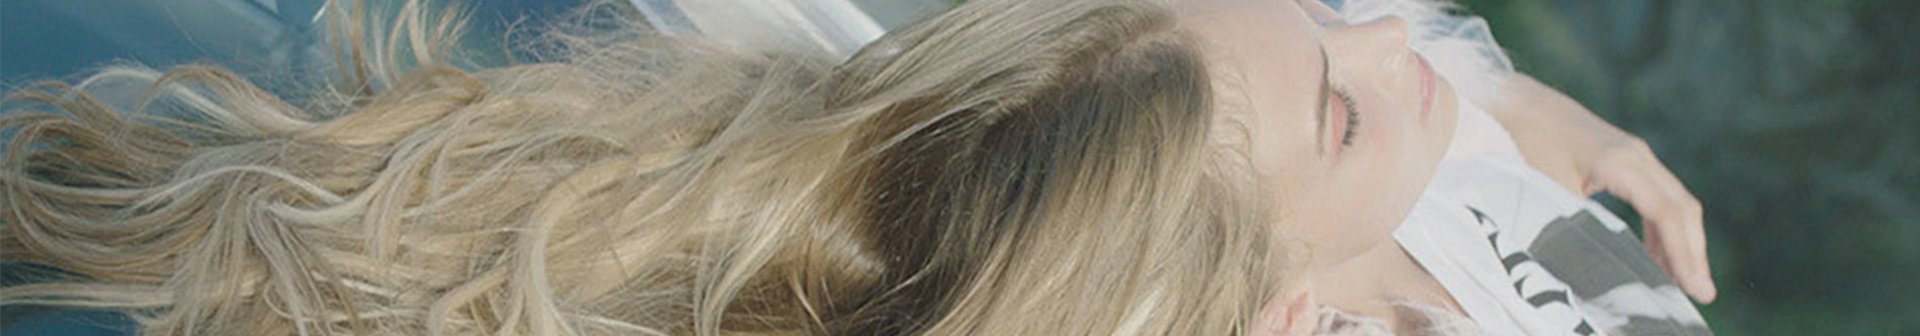 Frau mit üppigen langen blonden Haaren